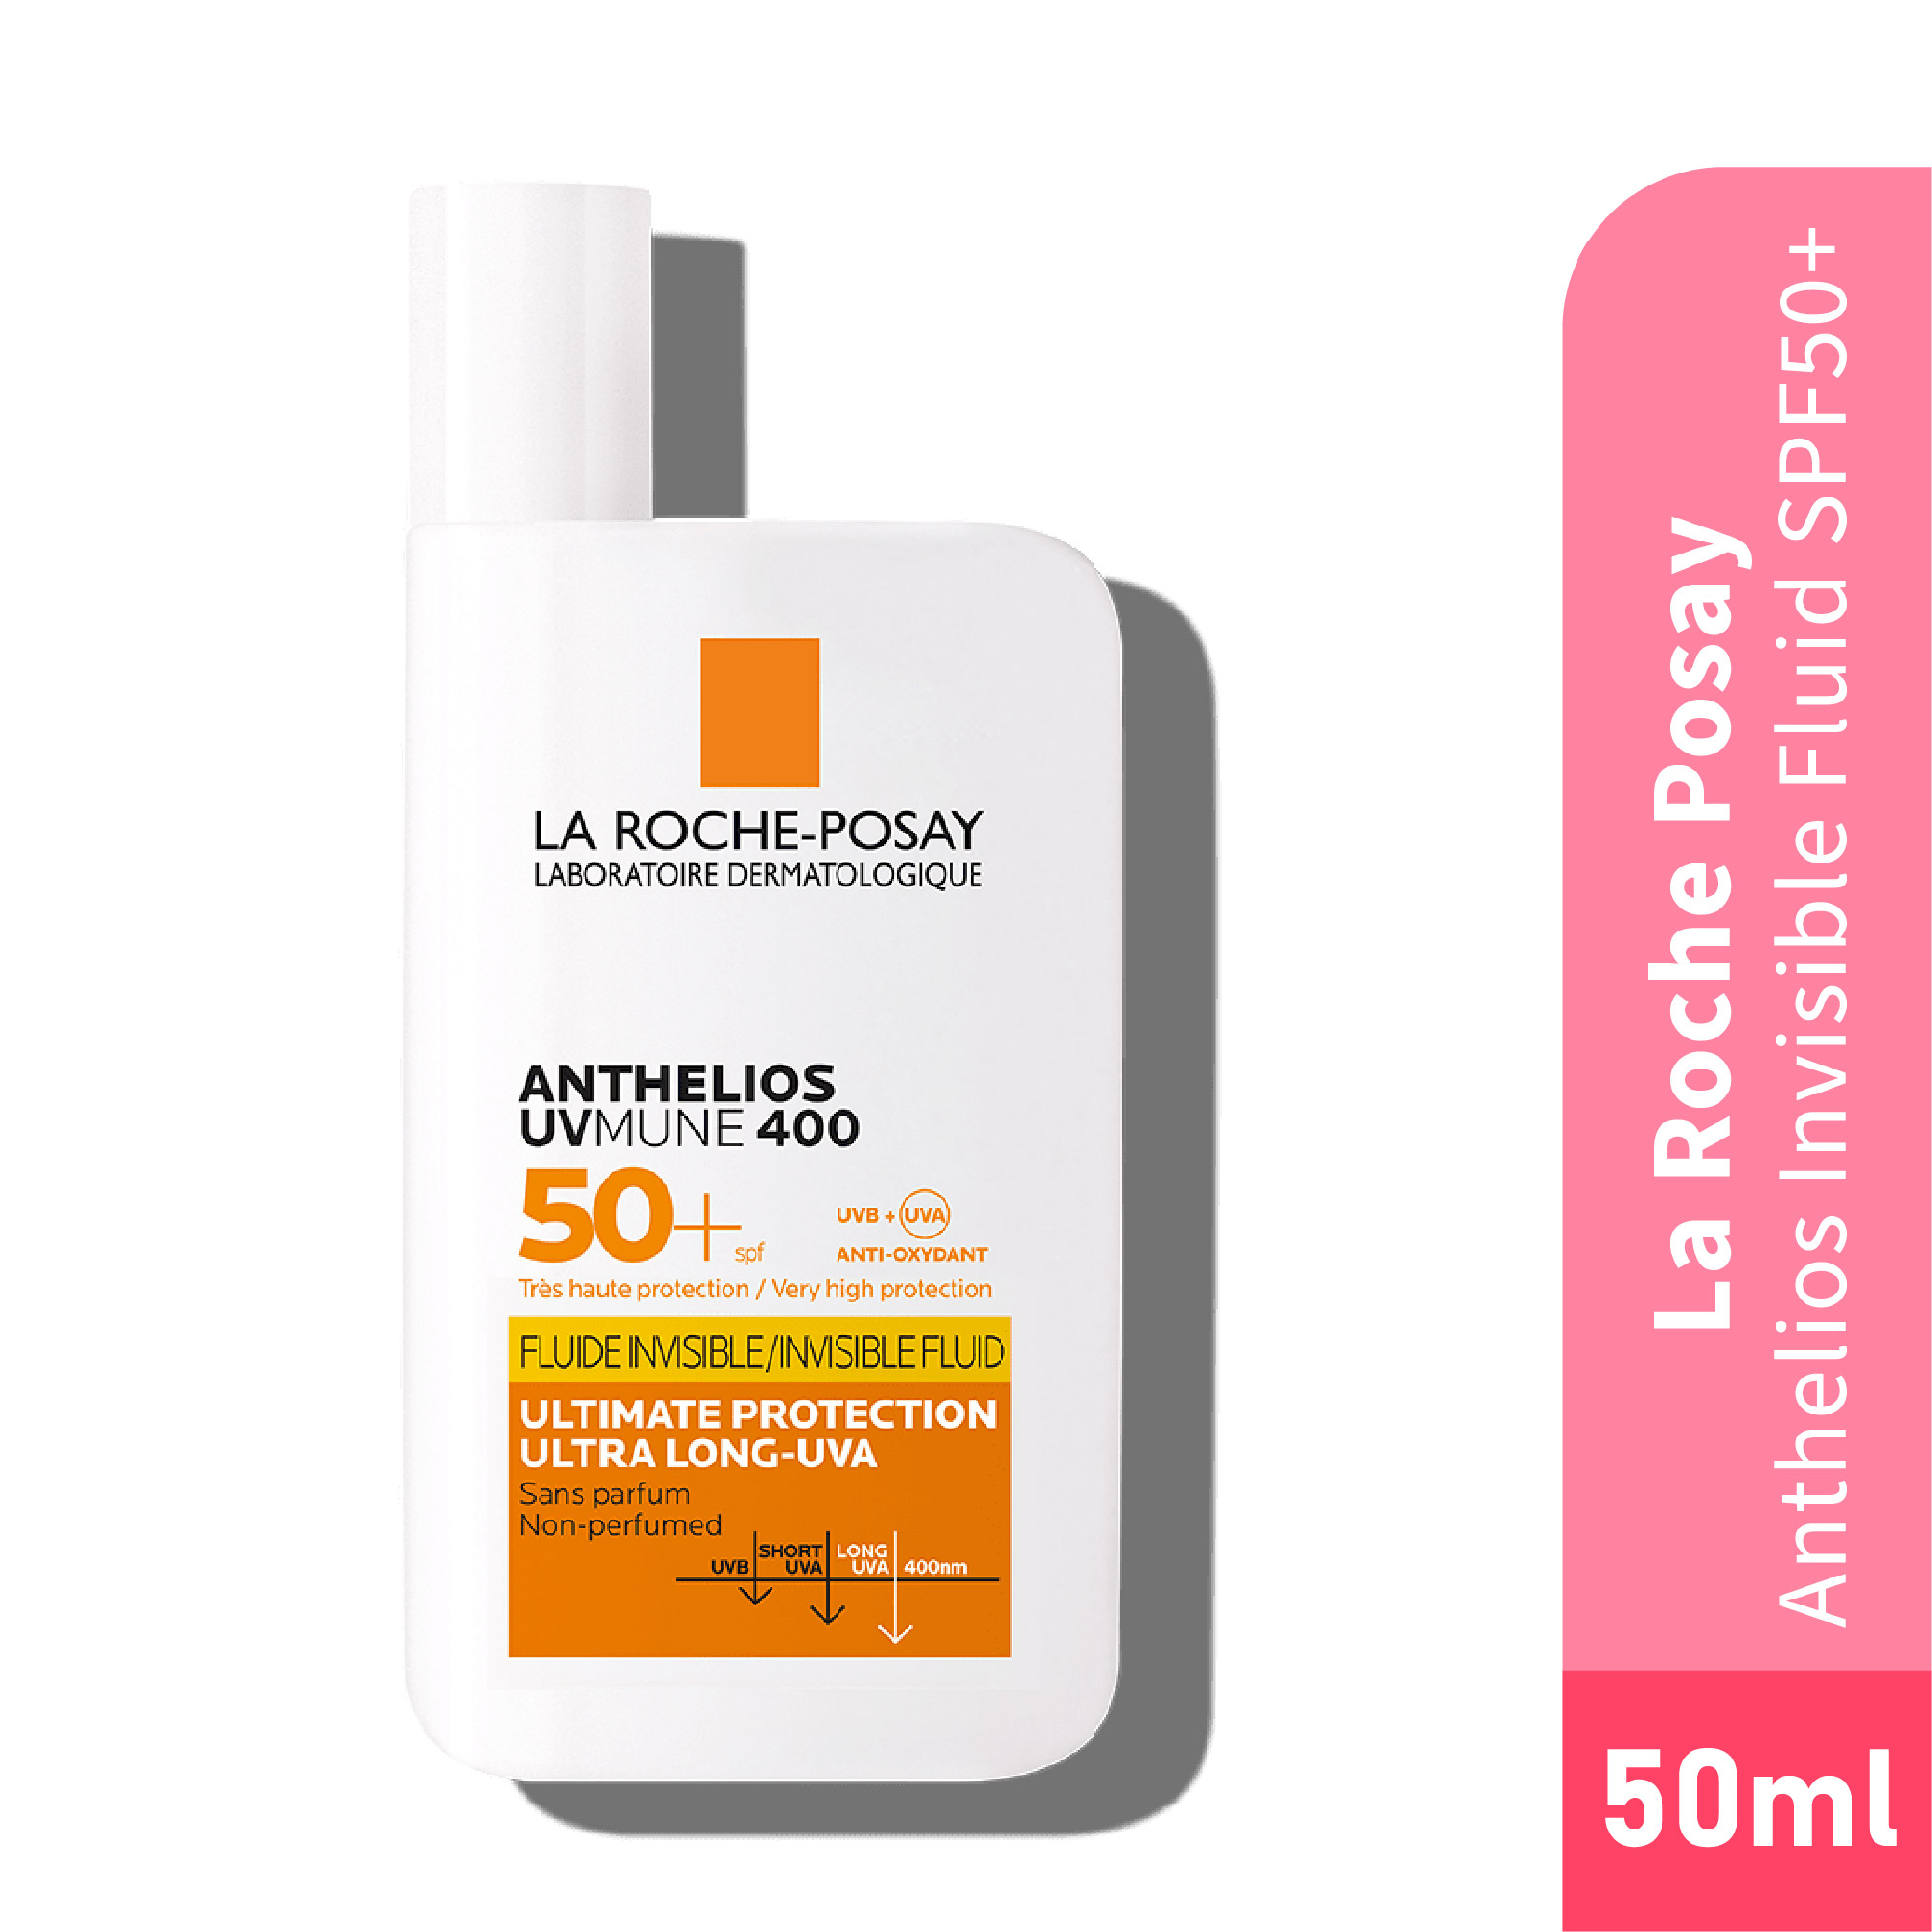 LA ROCHE POSAY Anthelios Invisible Fluid SPF 50+ Sunscreen 50ml - Sensitive / Sun-Allergic Skin Sunscreen SPF 50 防曬霜